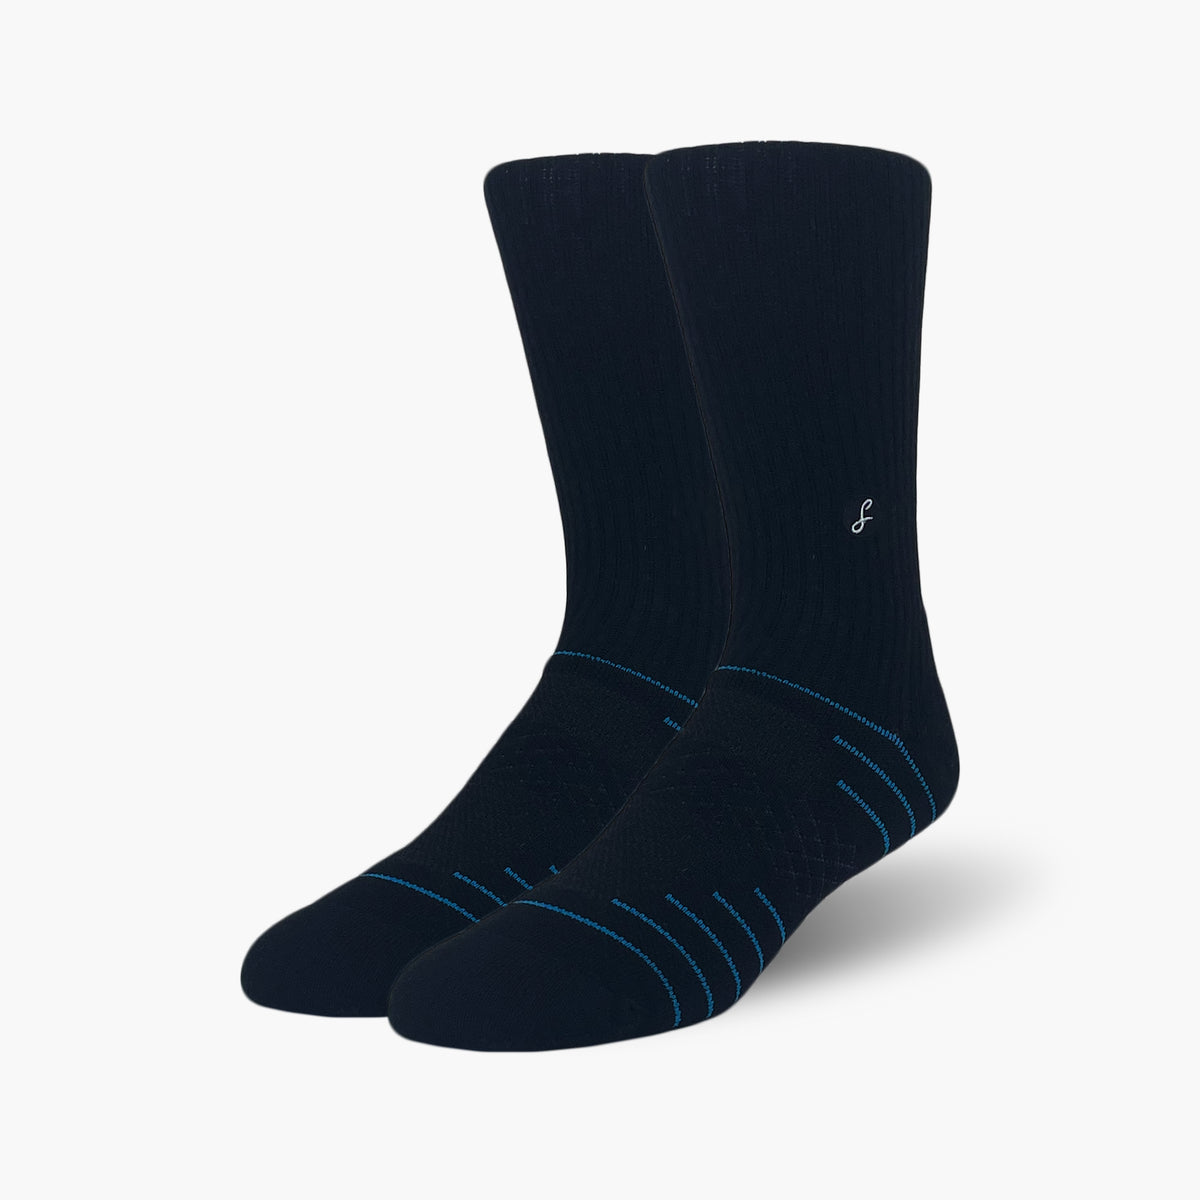 Black Merino Wool Sports Socks